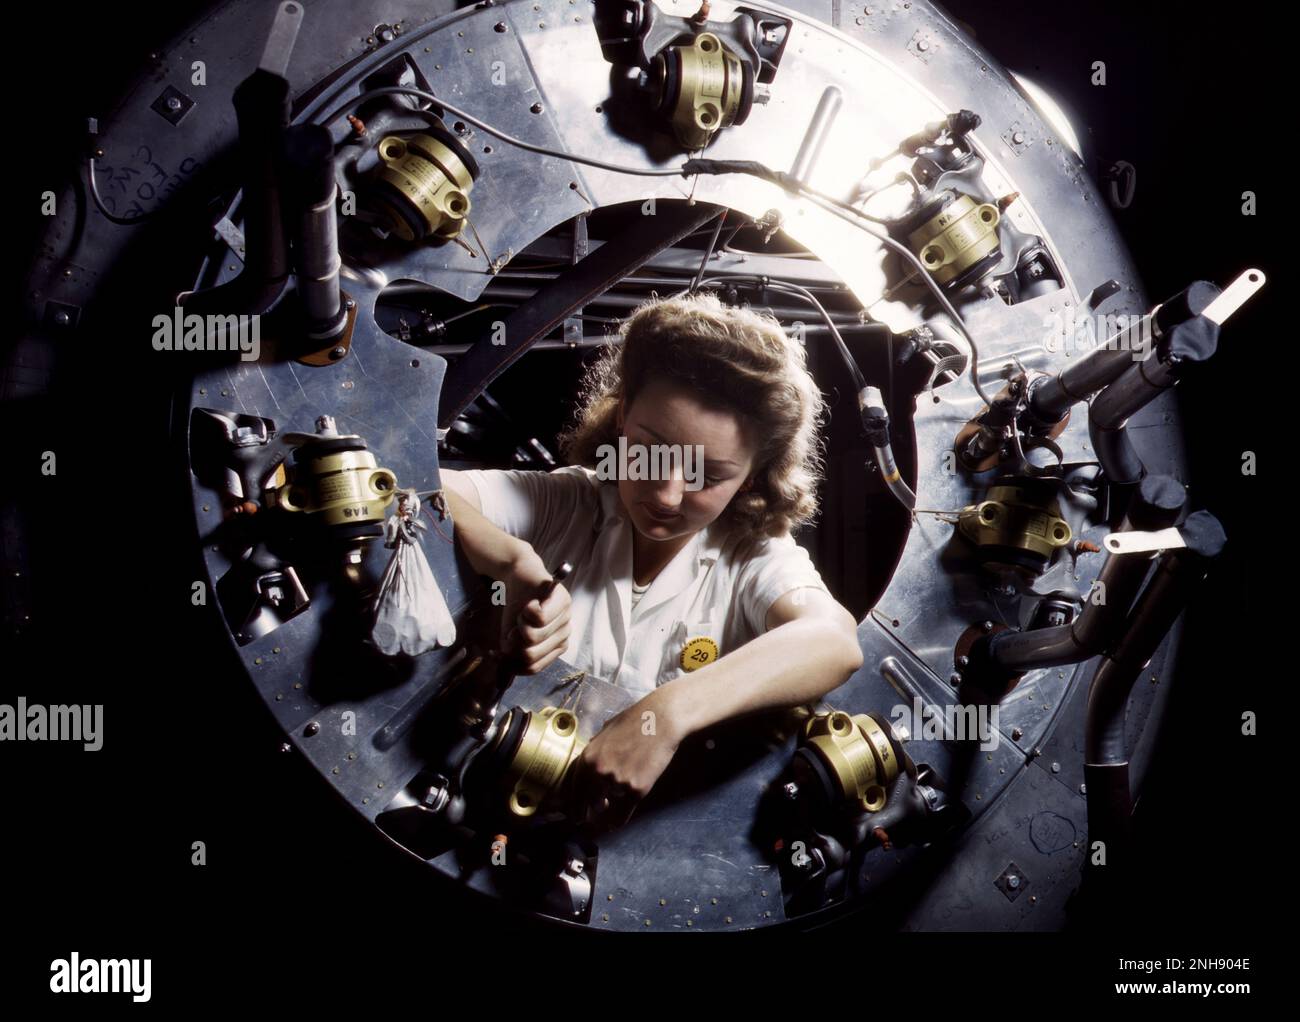 Femme qui assemble le capot de l'un des moteurs d'un bombardier B-25 dans le département des moteurs de l'usine d'Inglewood, en Californie, en Amérique du Nord [Aviation, Inc.] pendant la Seconde Guerre mondiale Photographié par Alfred T. Palmer, octobre 1942. Banque D'Images